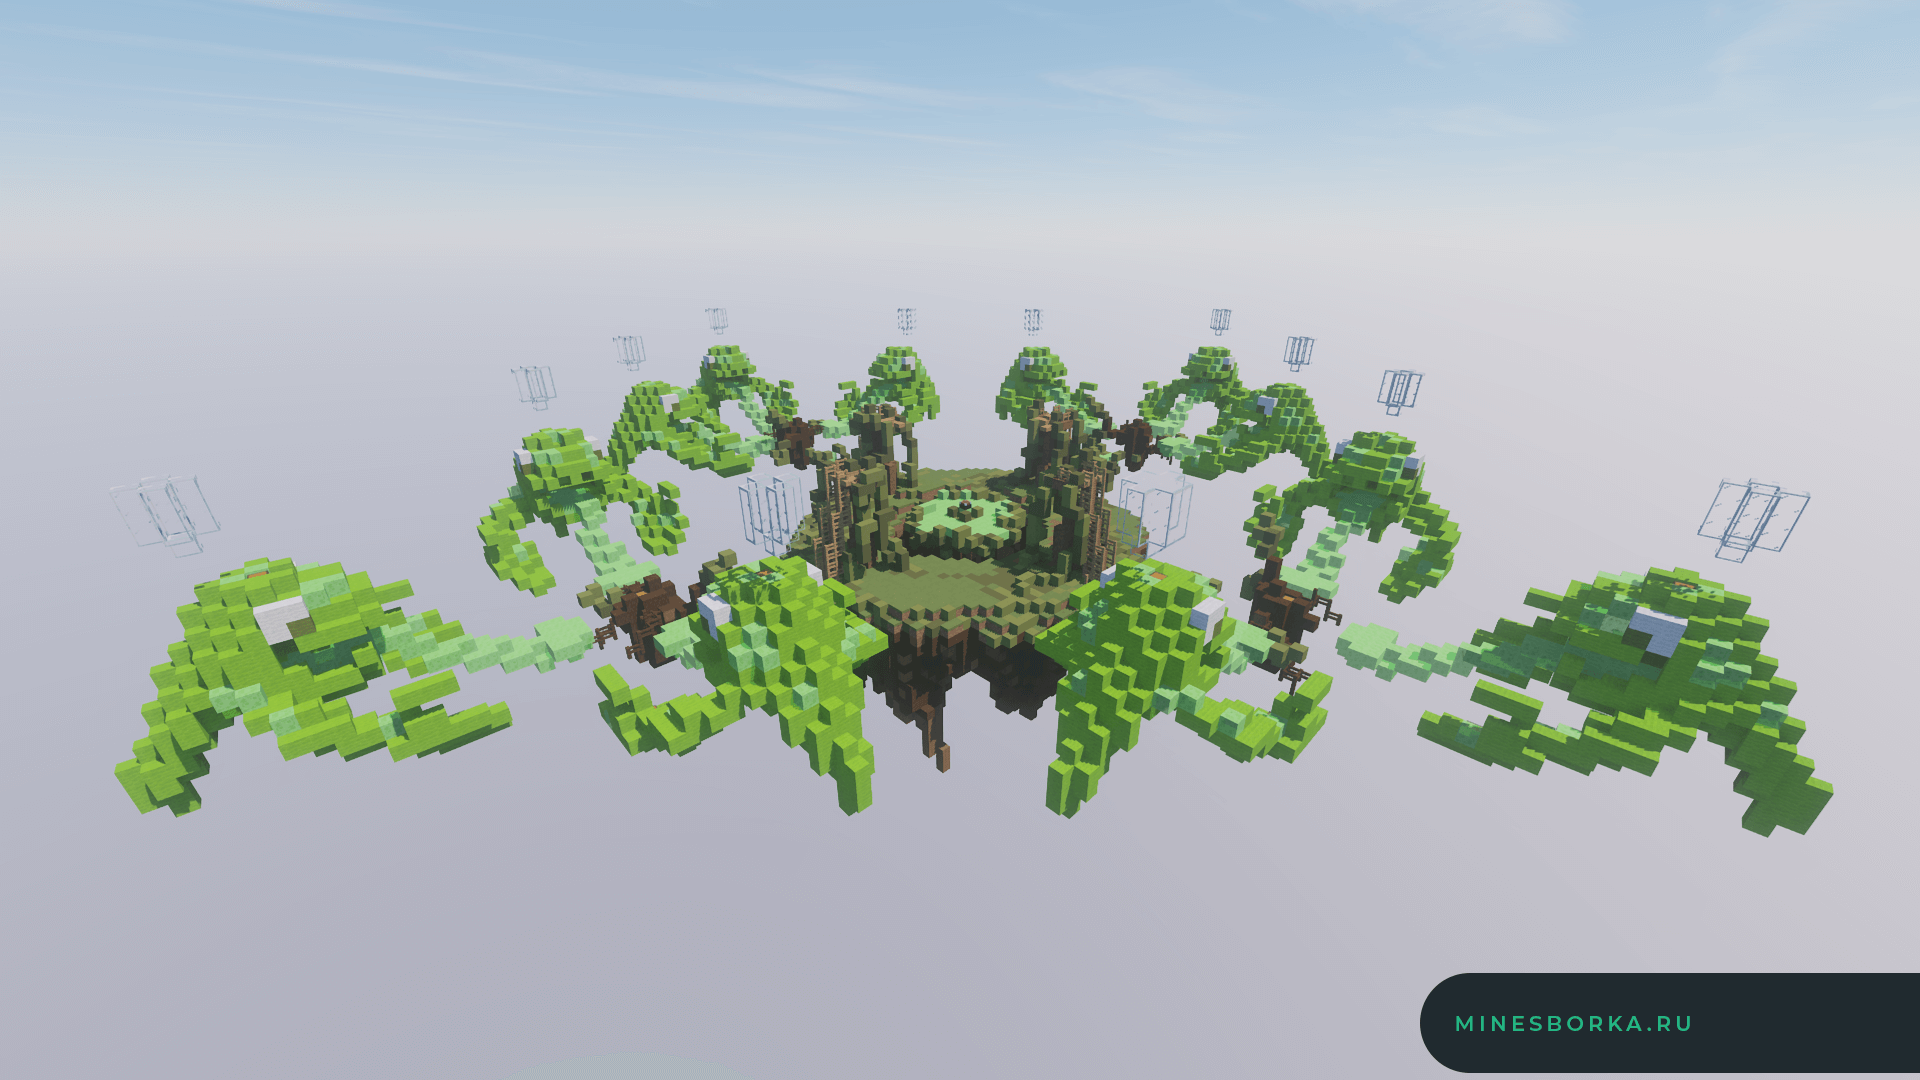 Скачать необычную SkyWars арену для Minecraft